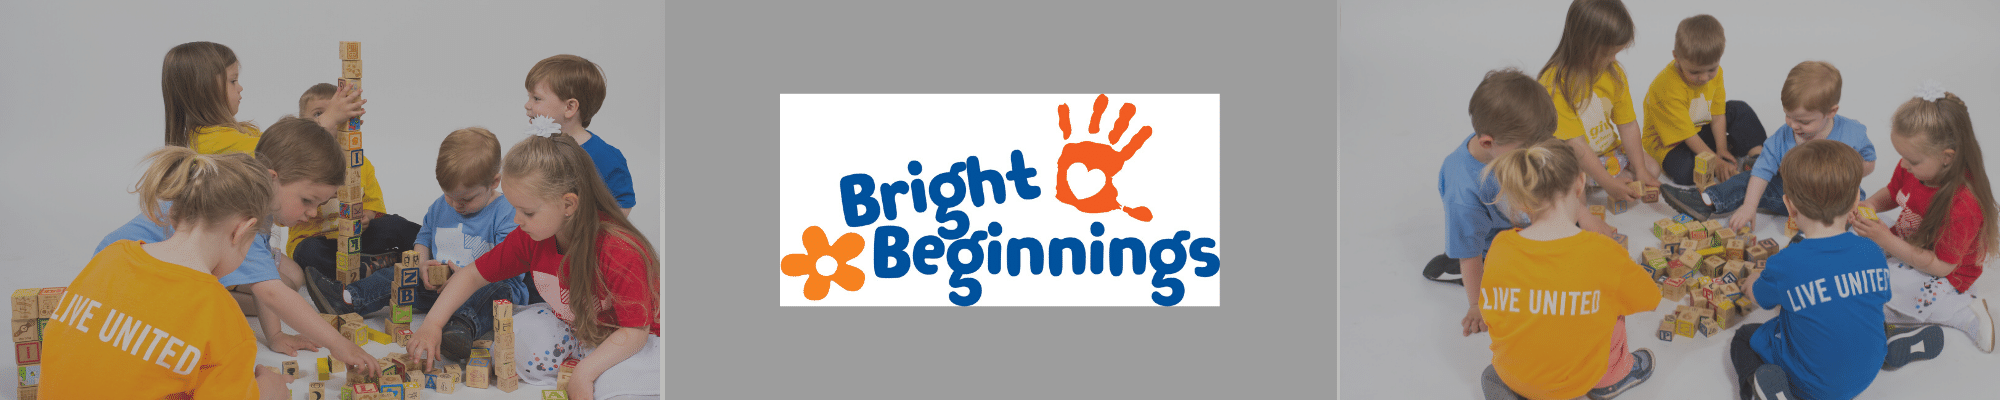 bright beginnings logo